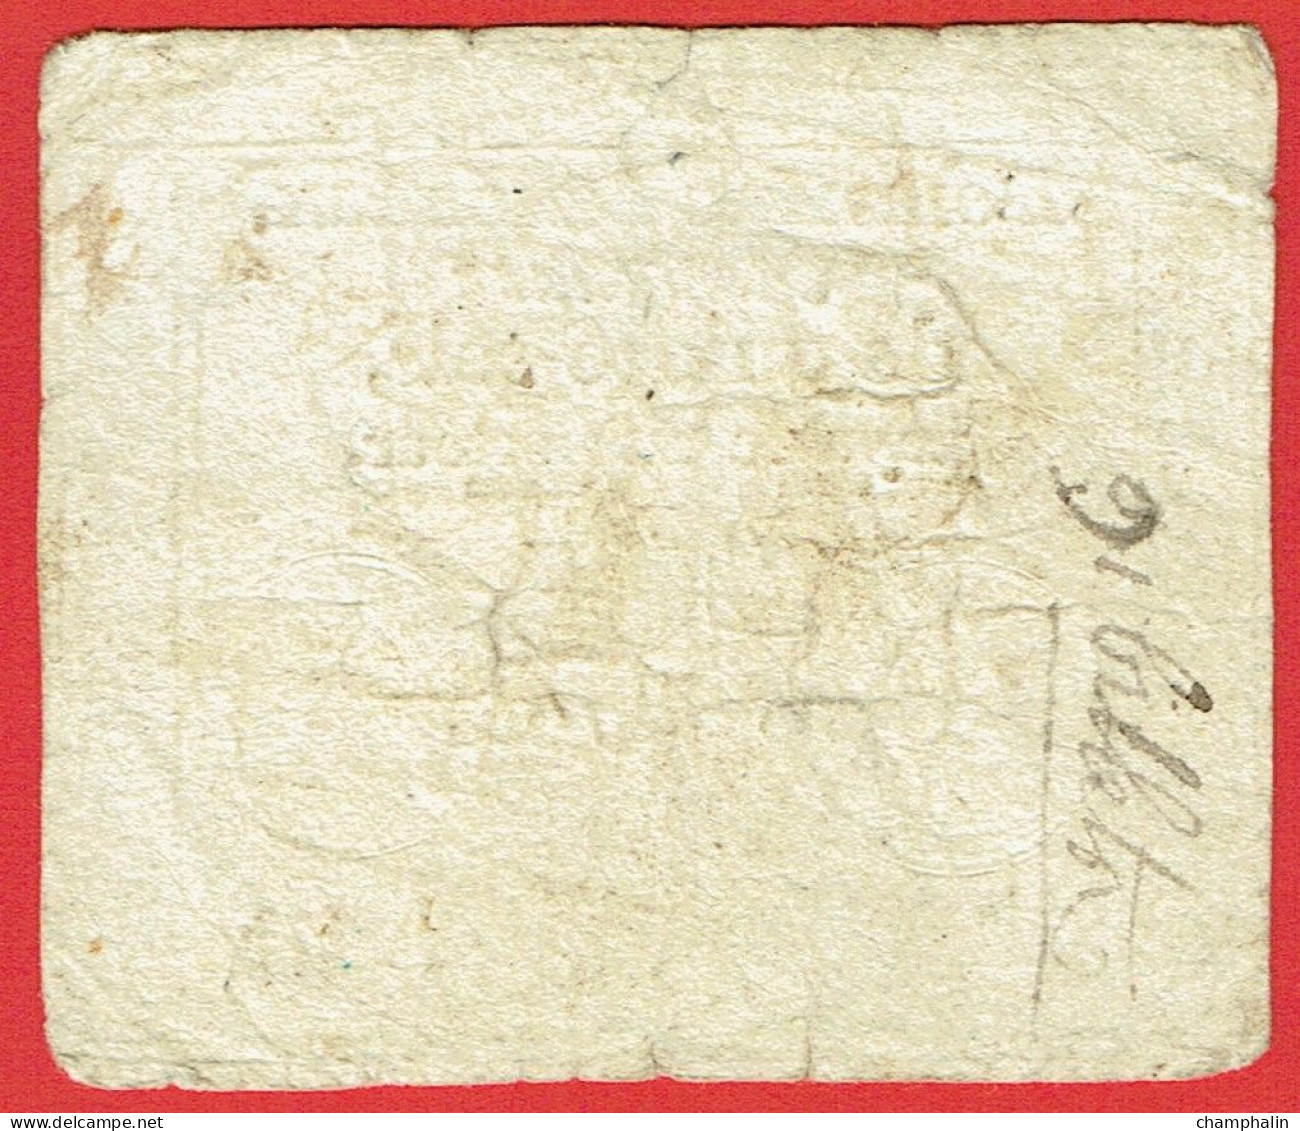 France - Assignat De 15 Sols - 24 Octobre 1792 - Série 272 - Signature Buttin - Assignats